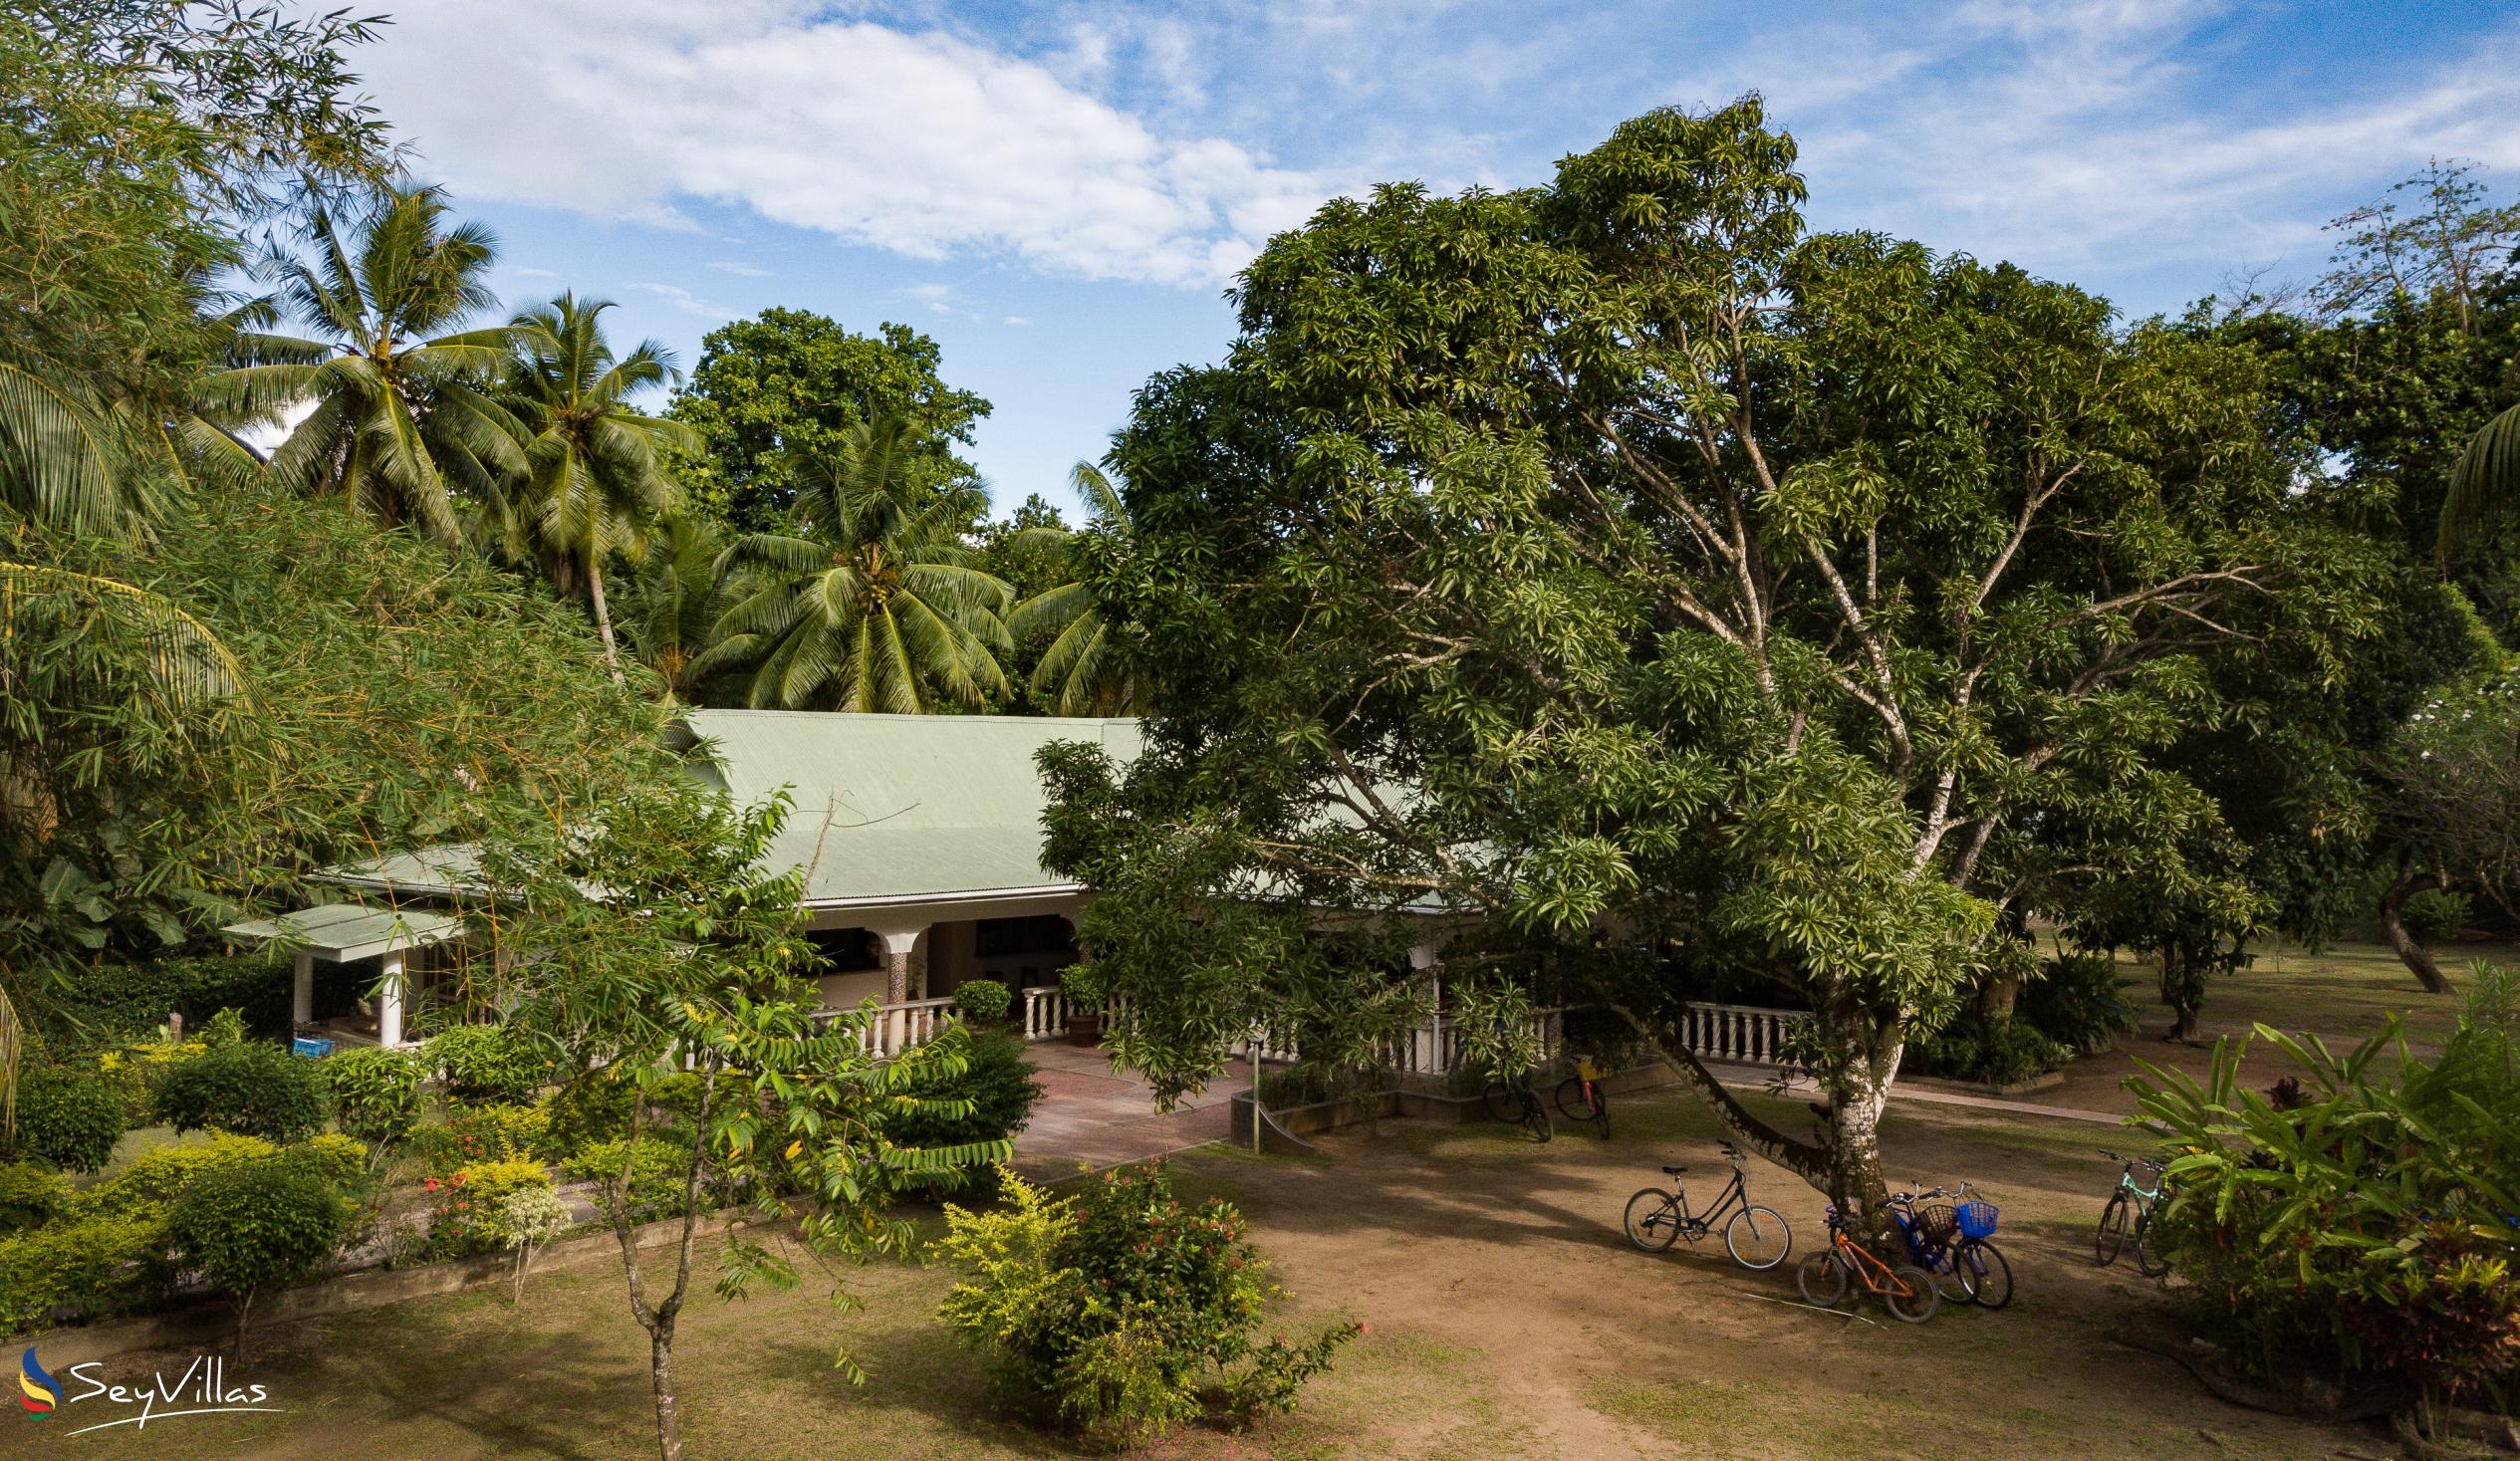 Foto 66: Chalet Bamboo Vert - Extérieur - La Digue (Seychelles)